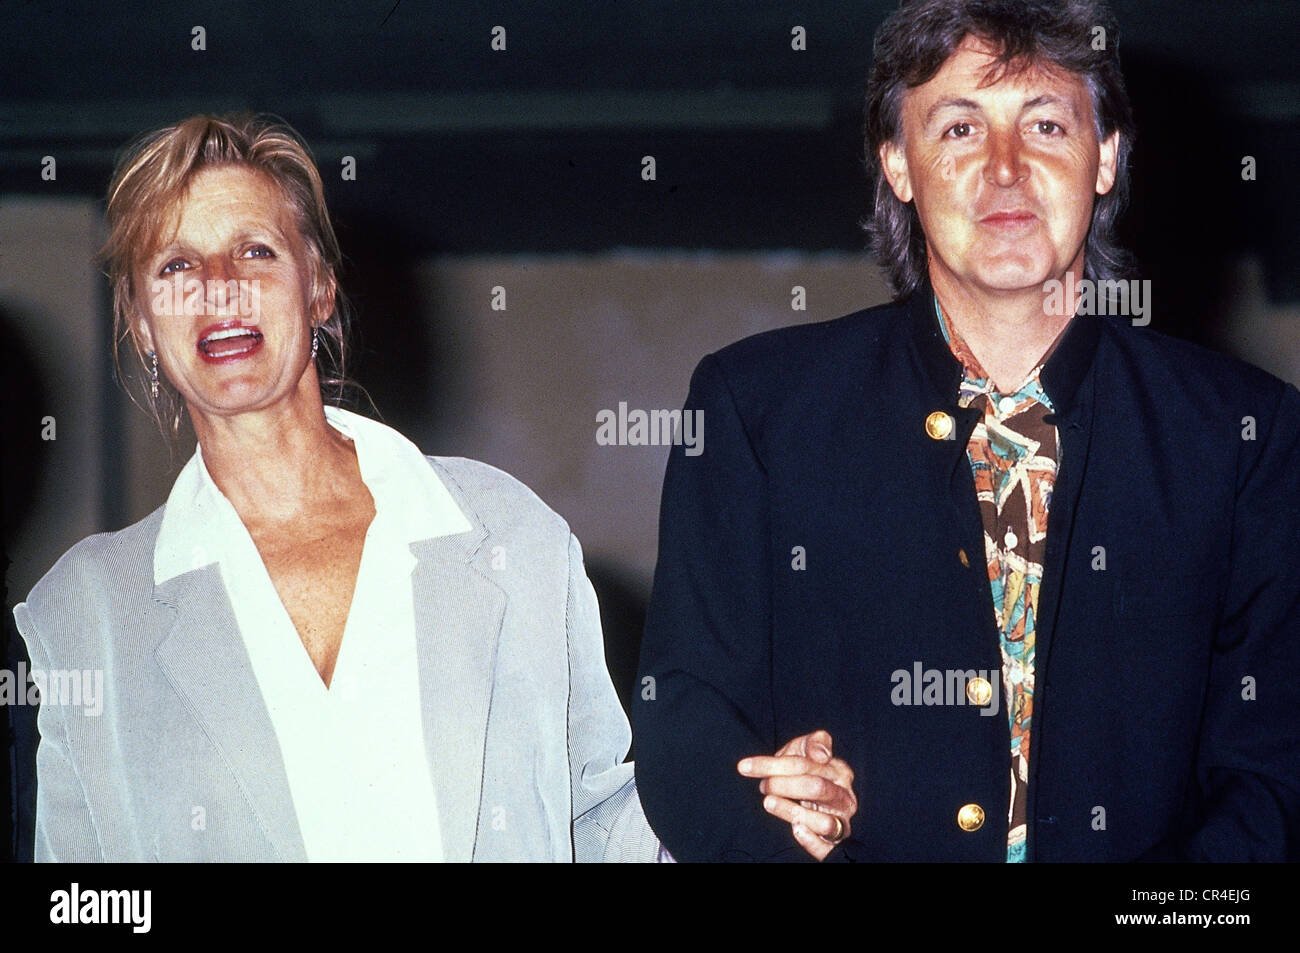 McCartney, Paul, * 18.6.1942, cantante y músico británico (The Beatles), con su esposa Linda en Hamburgo, Alemania, 1991, Foto de stock